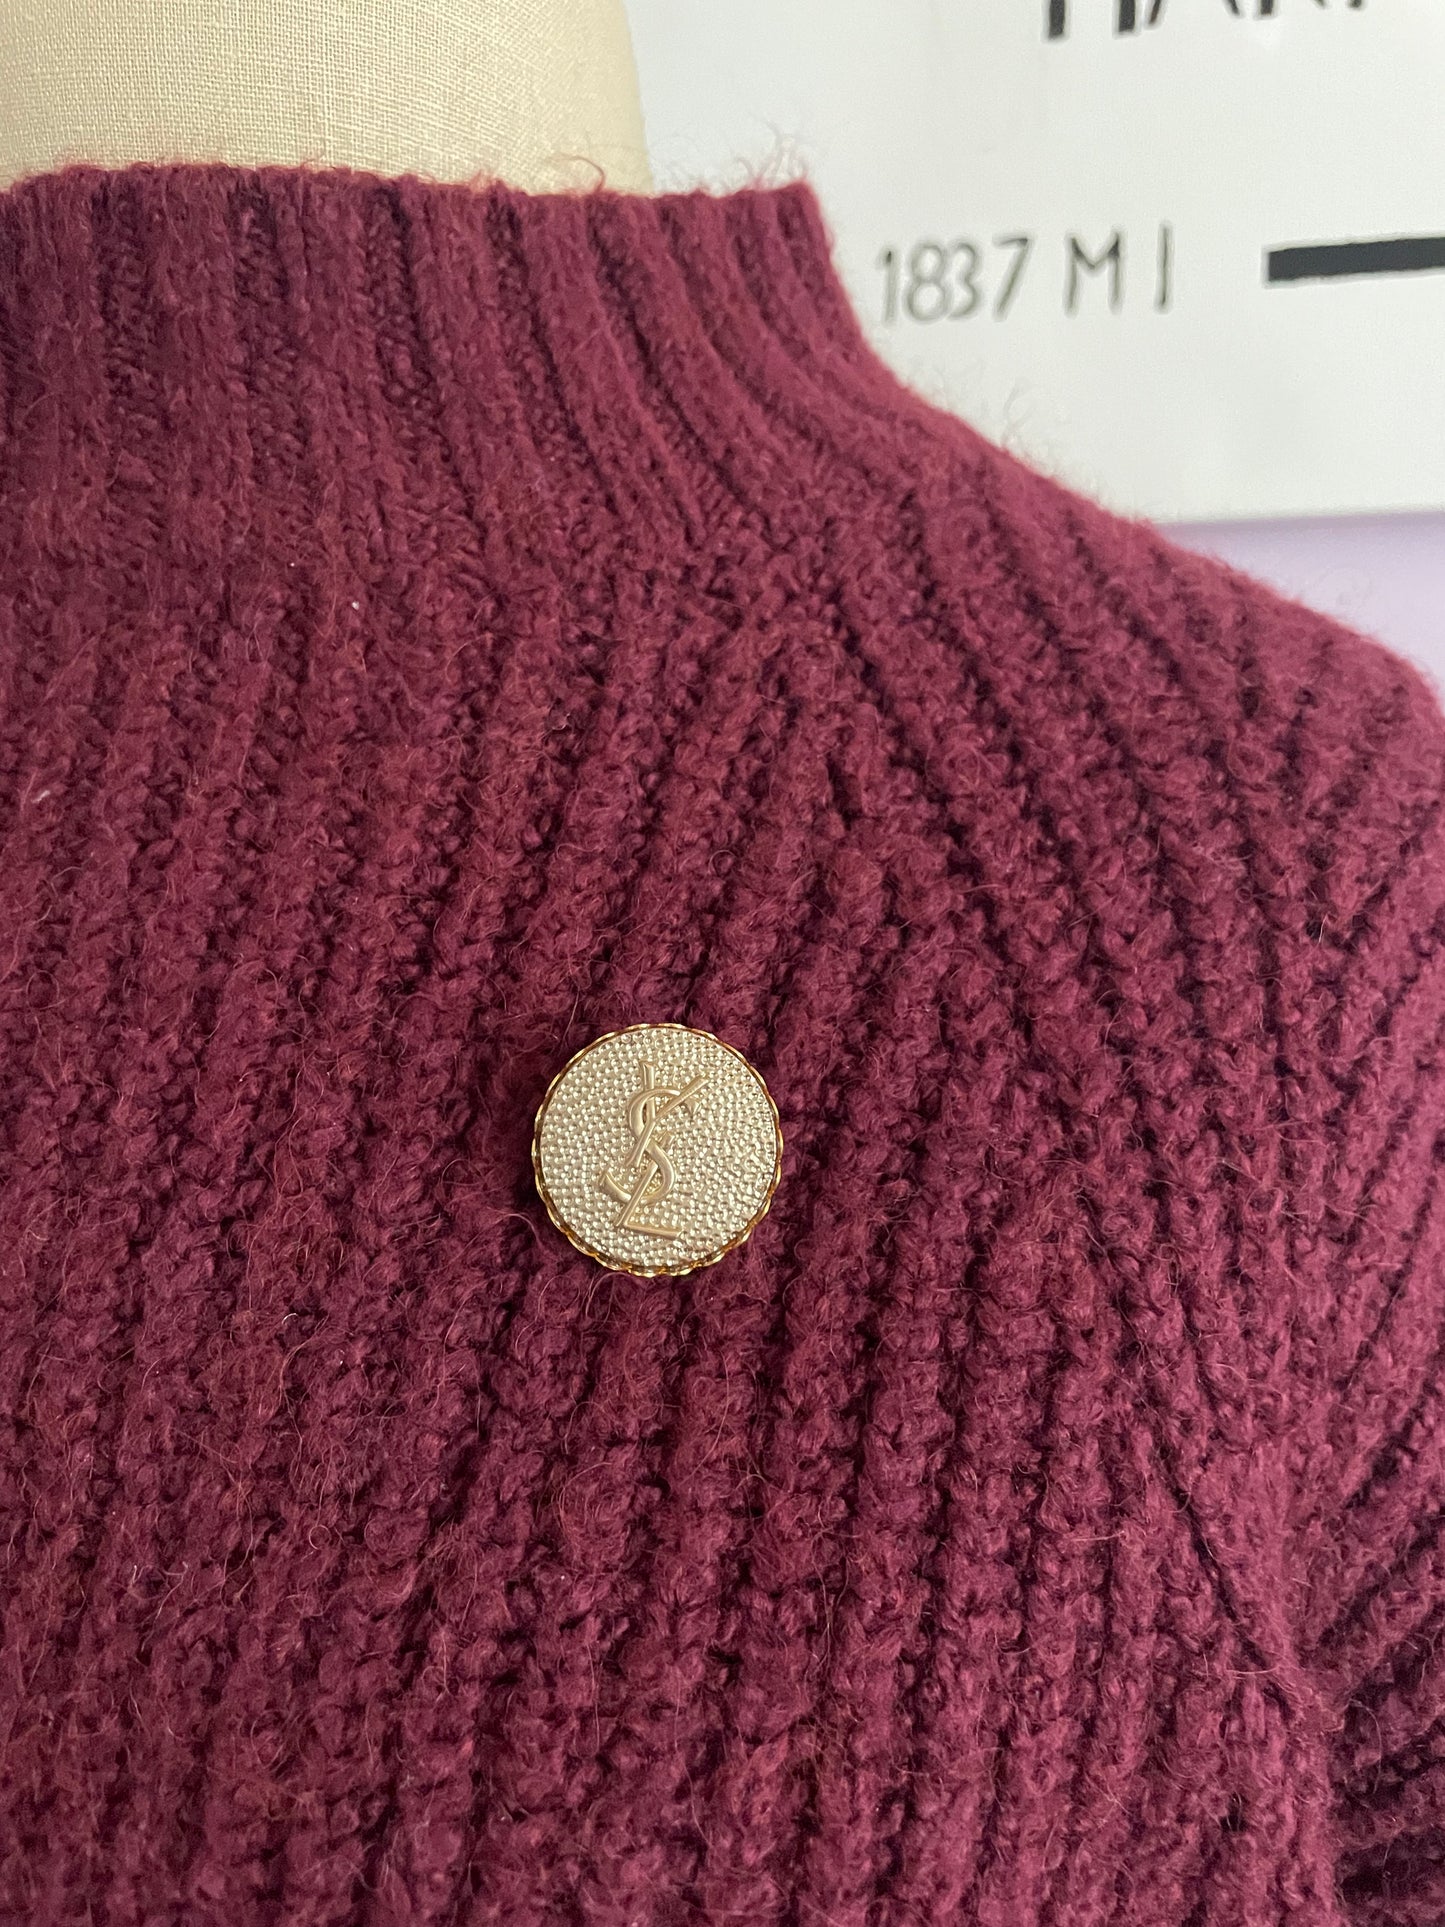 Vintage repurposed brooch pin